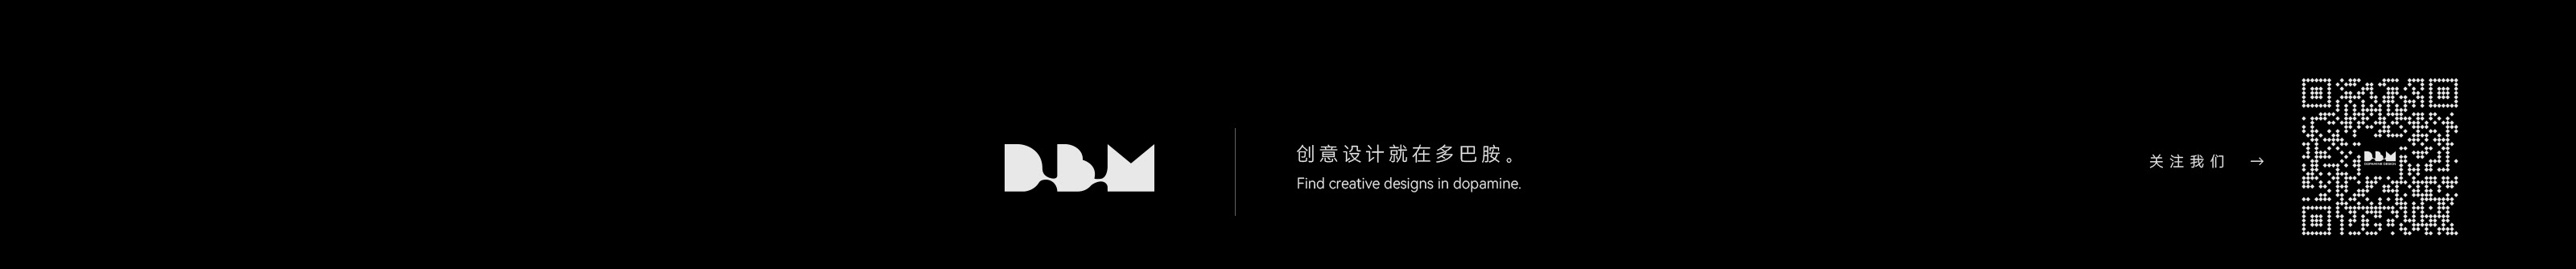 KK Lin's profile banner